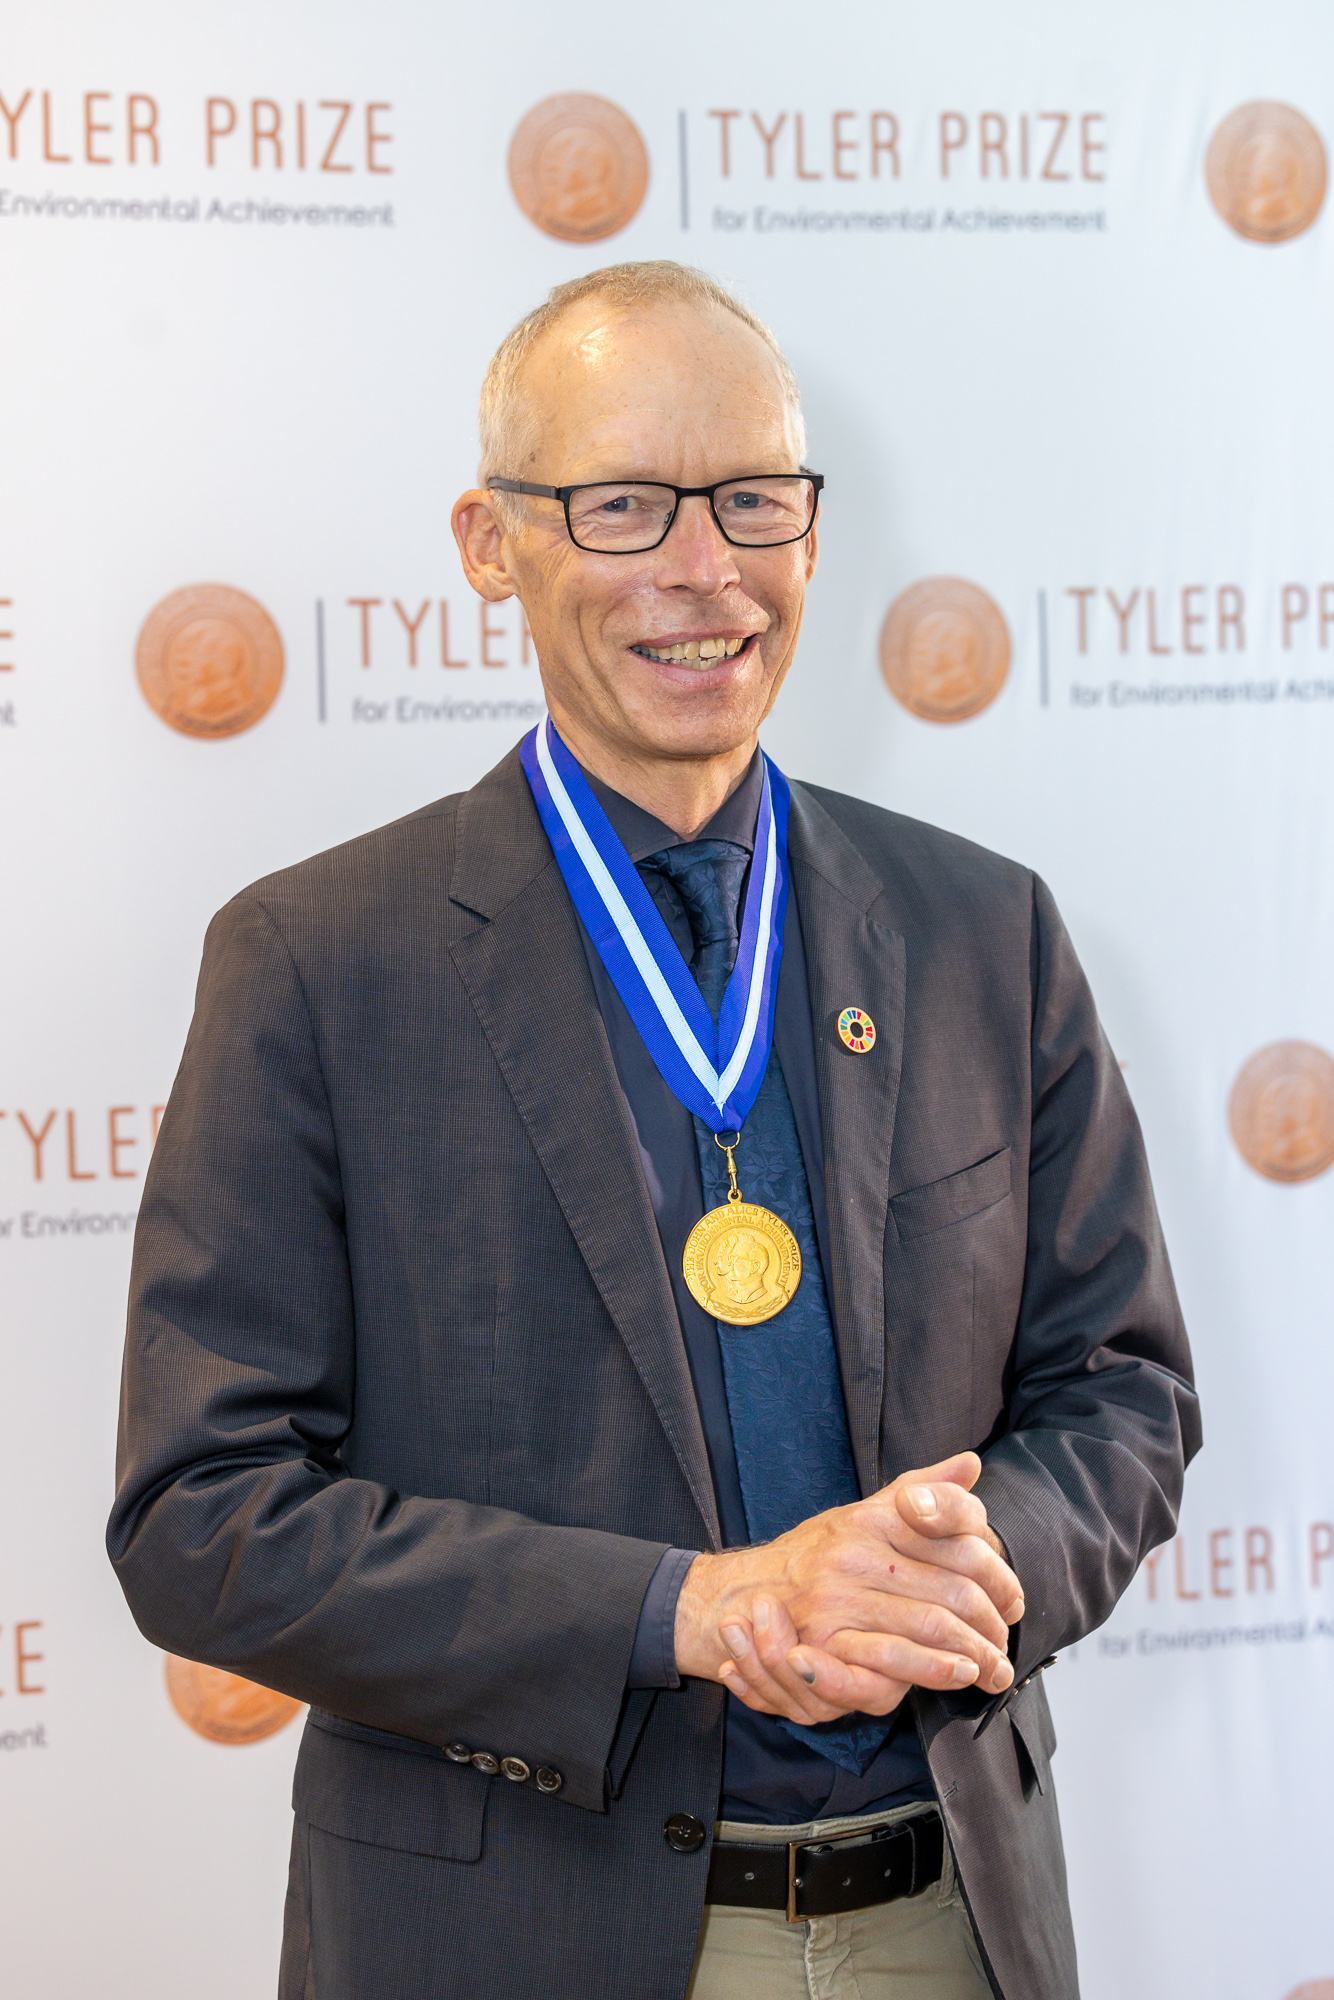 PIK director Johan Rockström awarded Tyler Prize